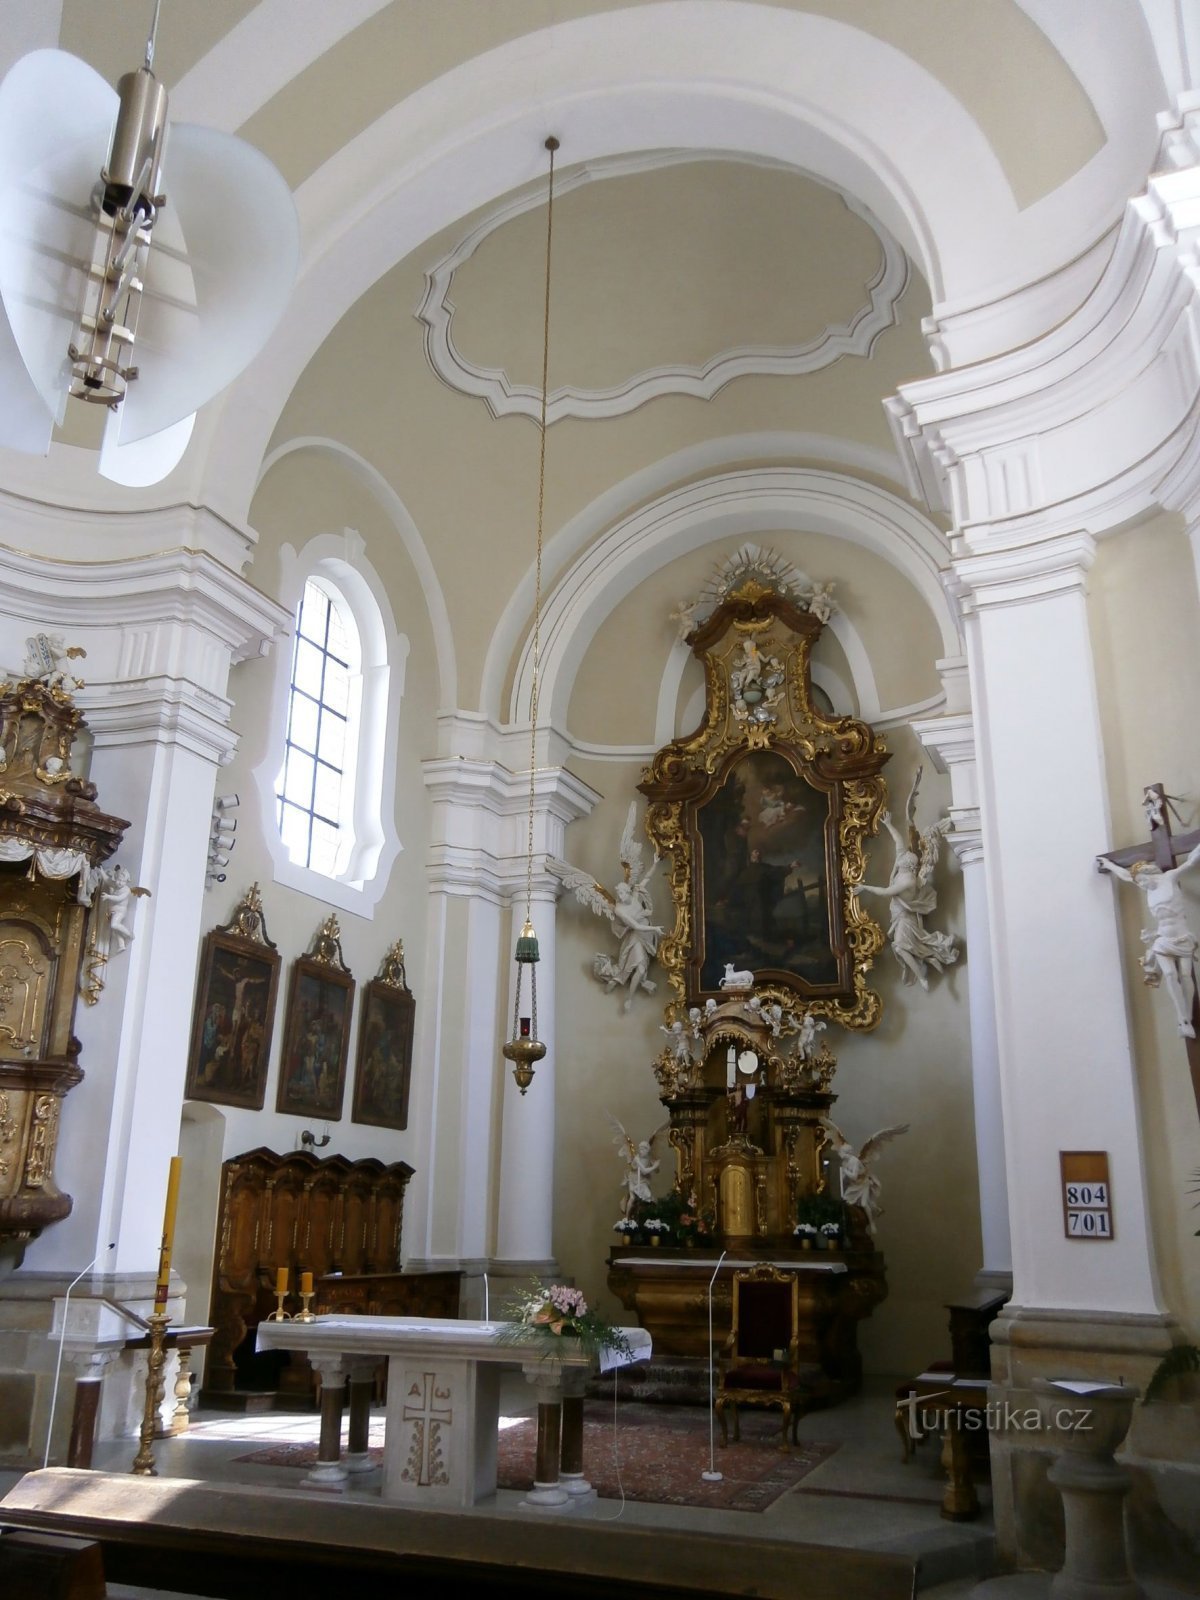 Intérieur de l'église St. Antonina (Hradec Králové, 23.5.2014 mai XNUMX)